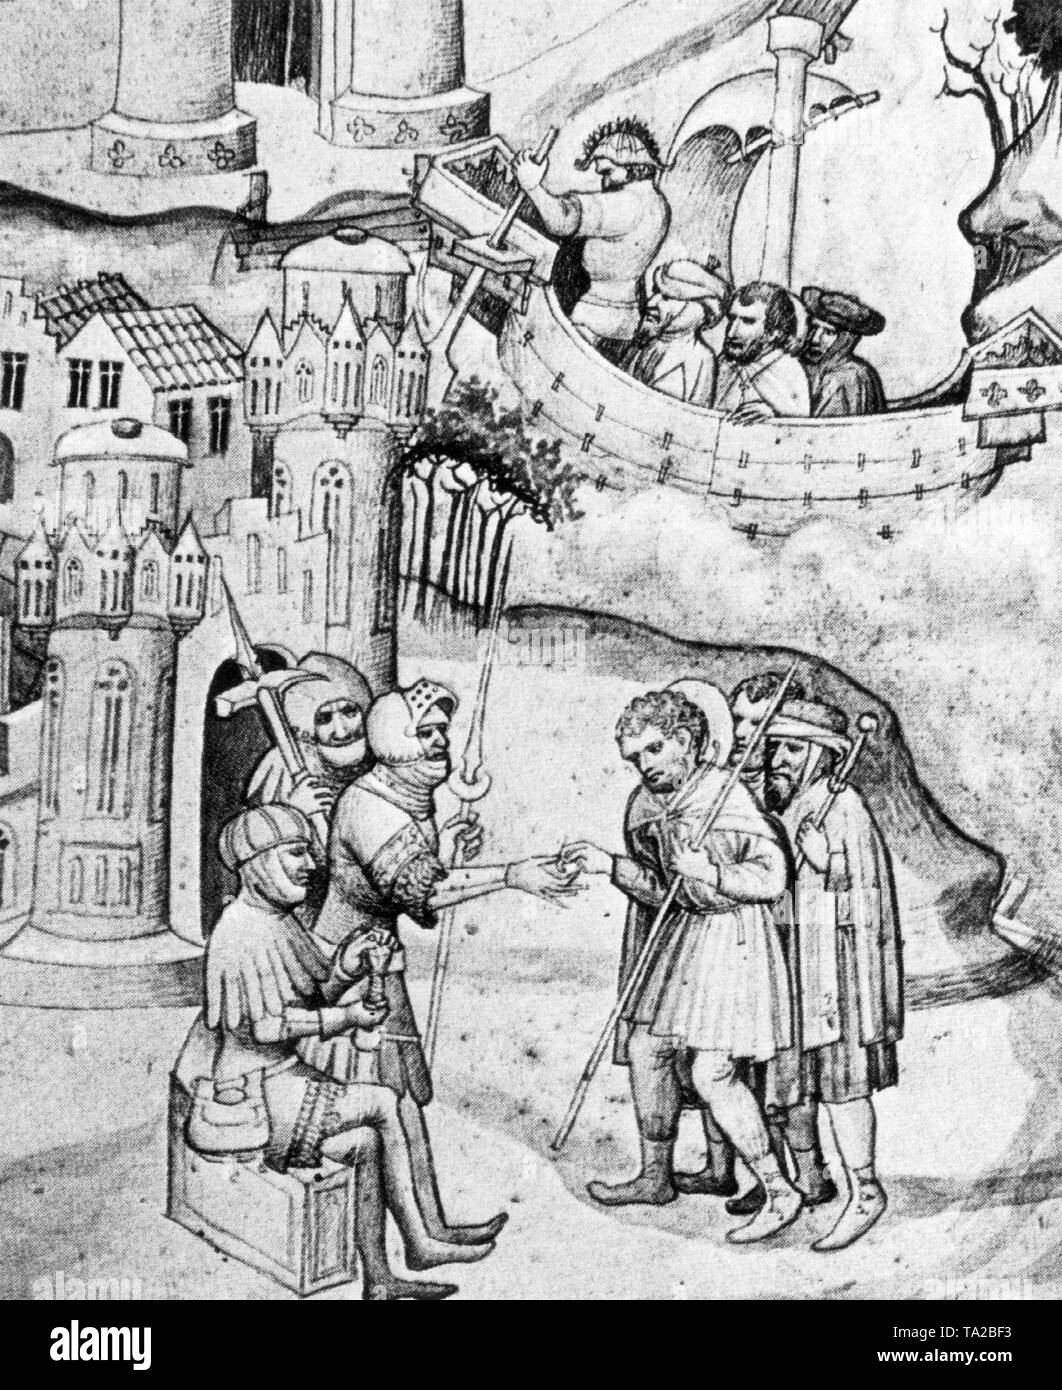 Pèlerins en route vers Jérusalem doit payer un péage pour l'utilisation de la route lors de la saisie de la terre sainte à Jaffa. Illustration d'un manuscrit médiéval (date estimée). Banque D'Images